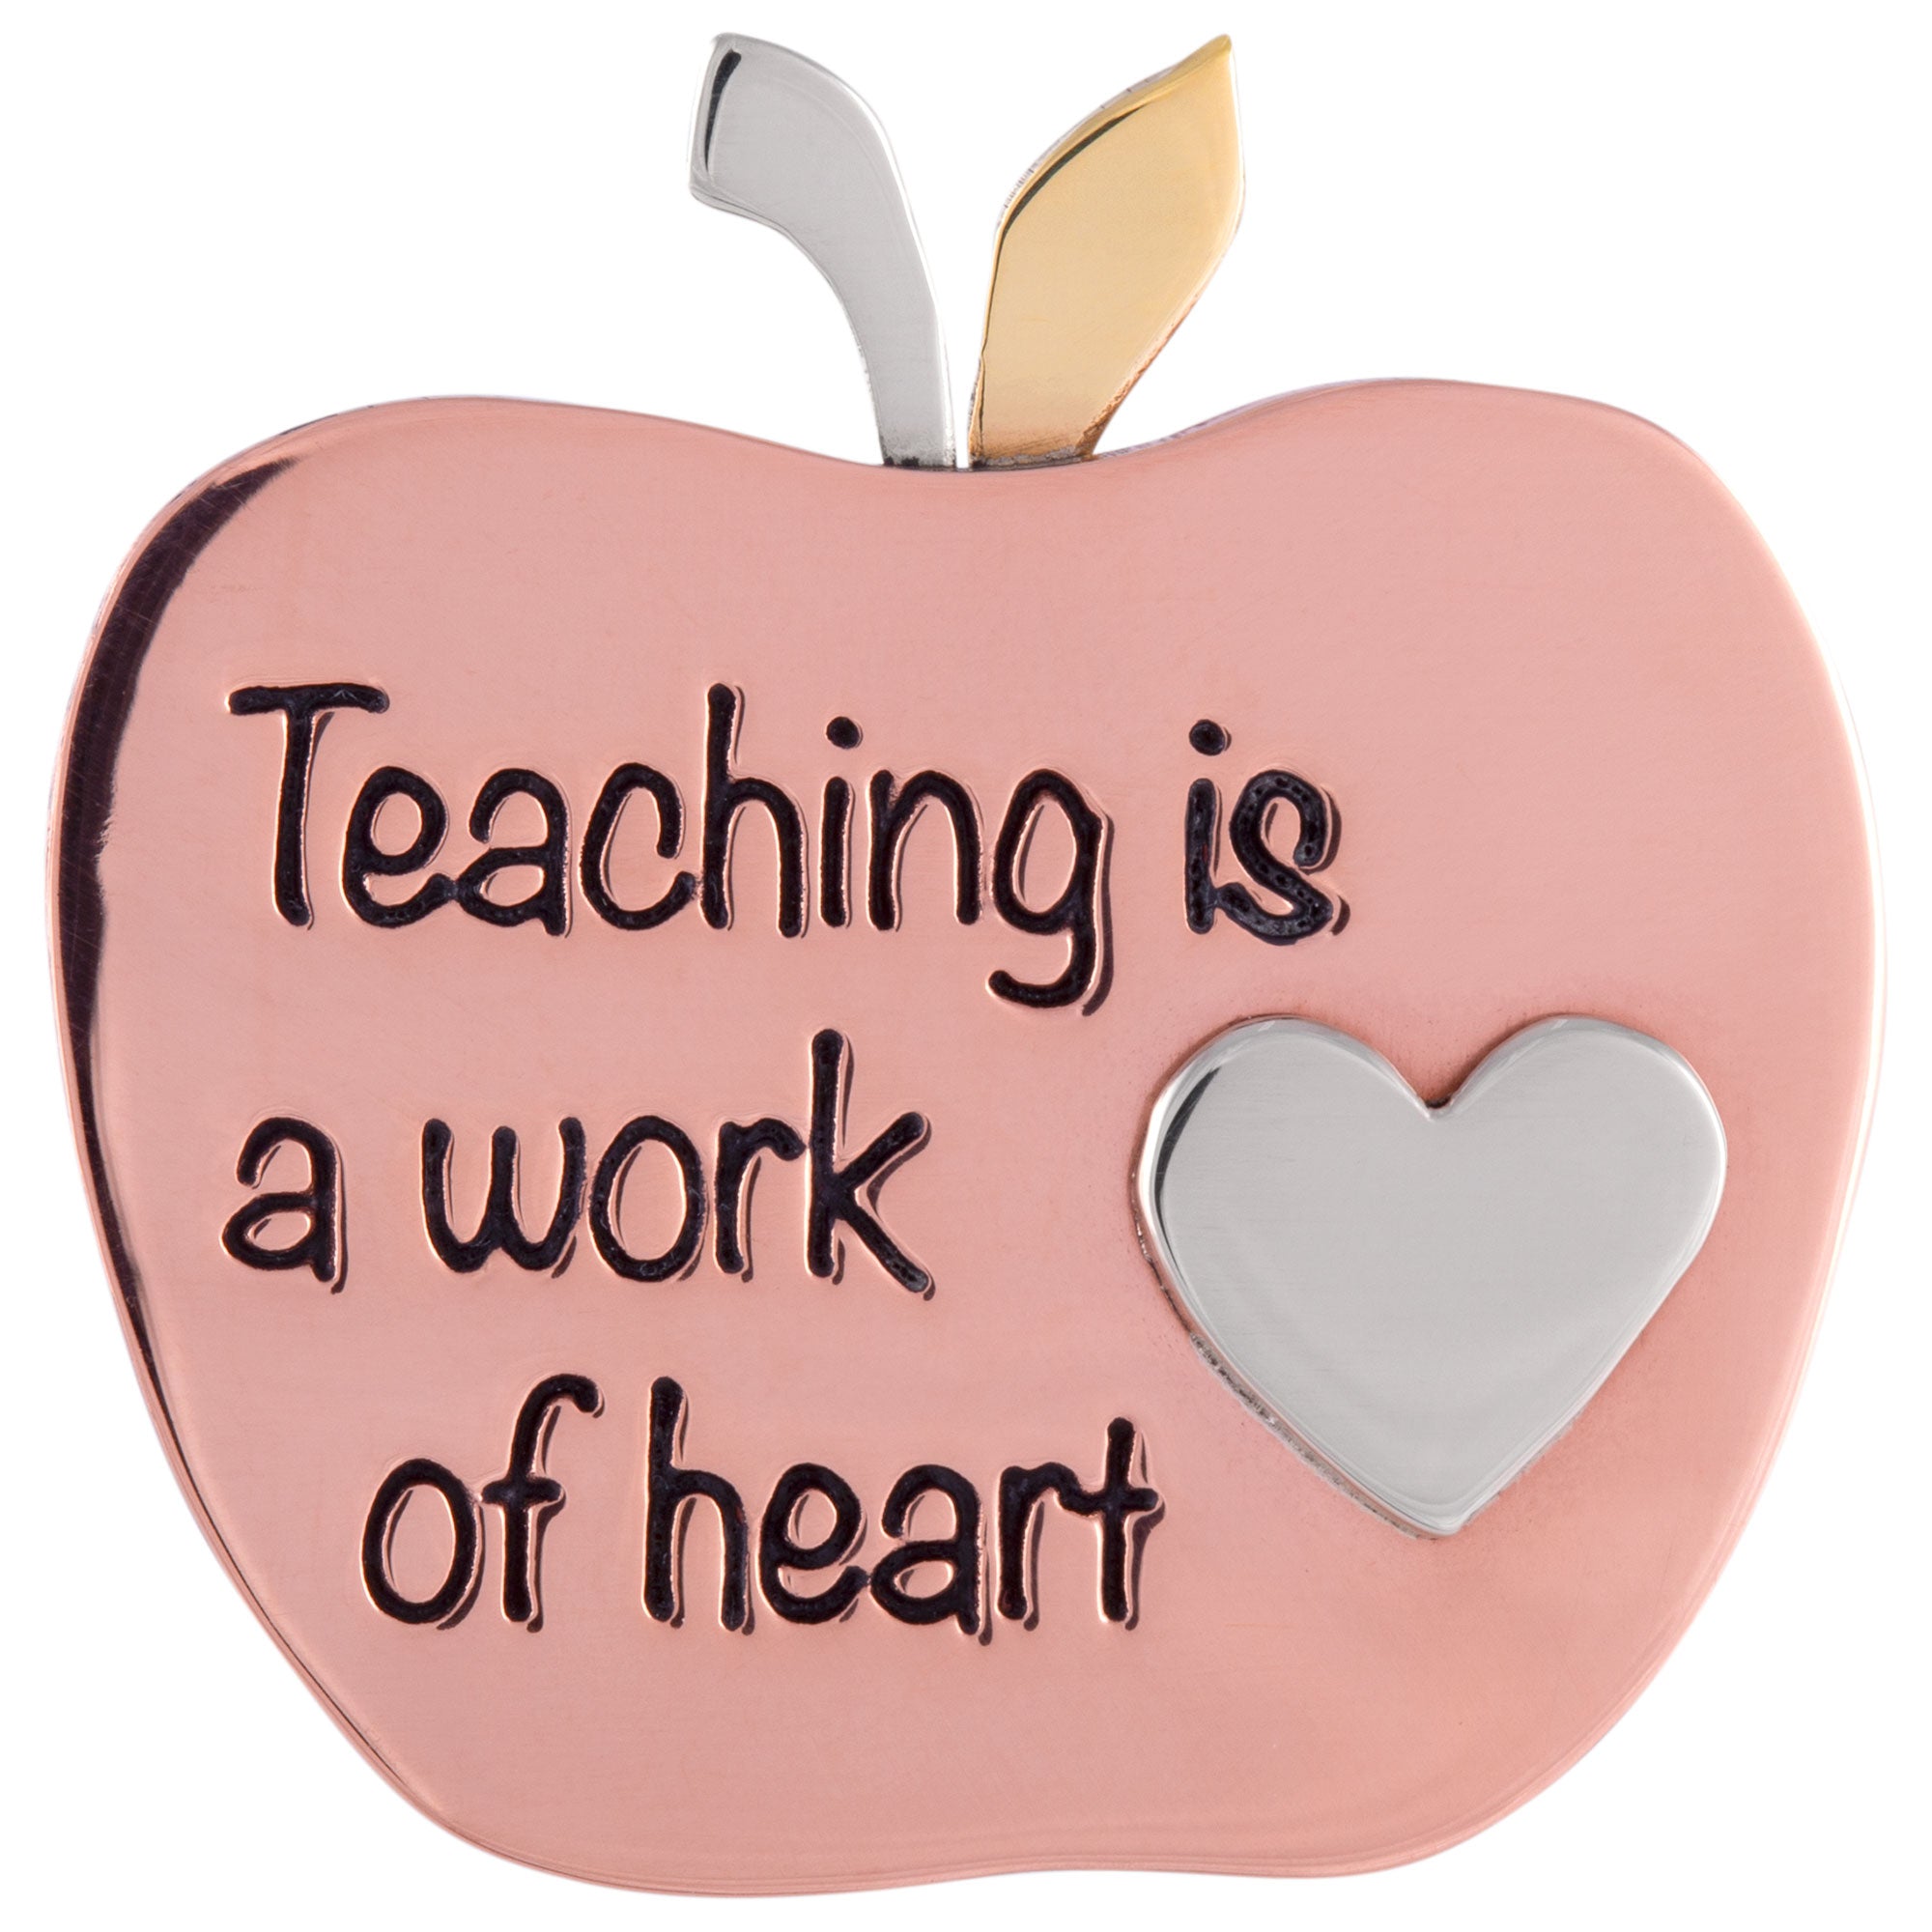 Work Of Heart Teacher Appreciation Pin - Apple